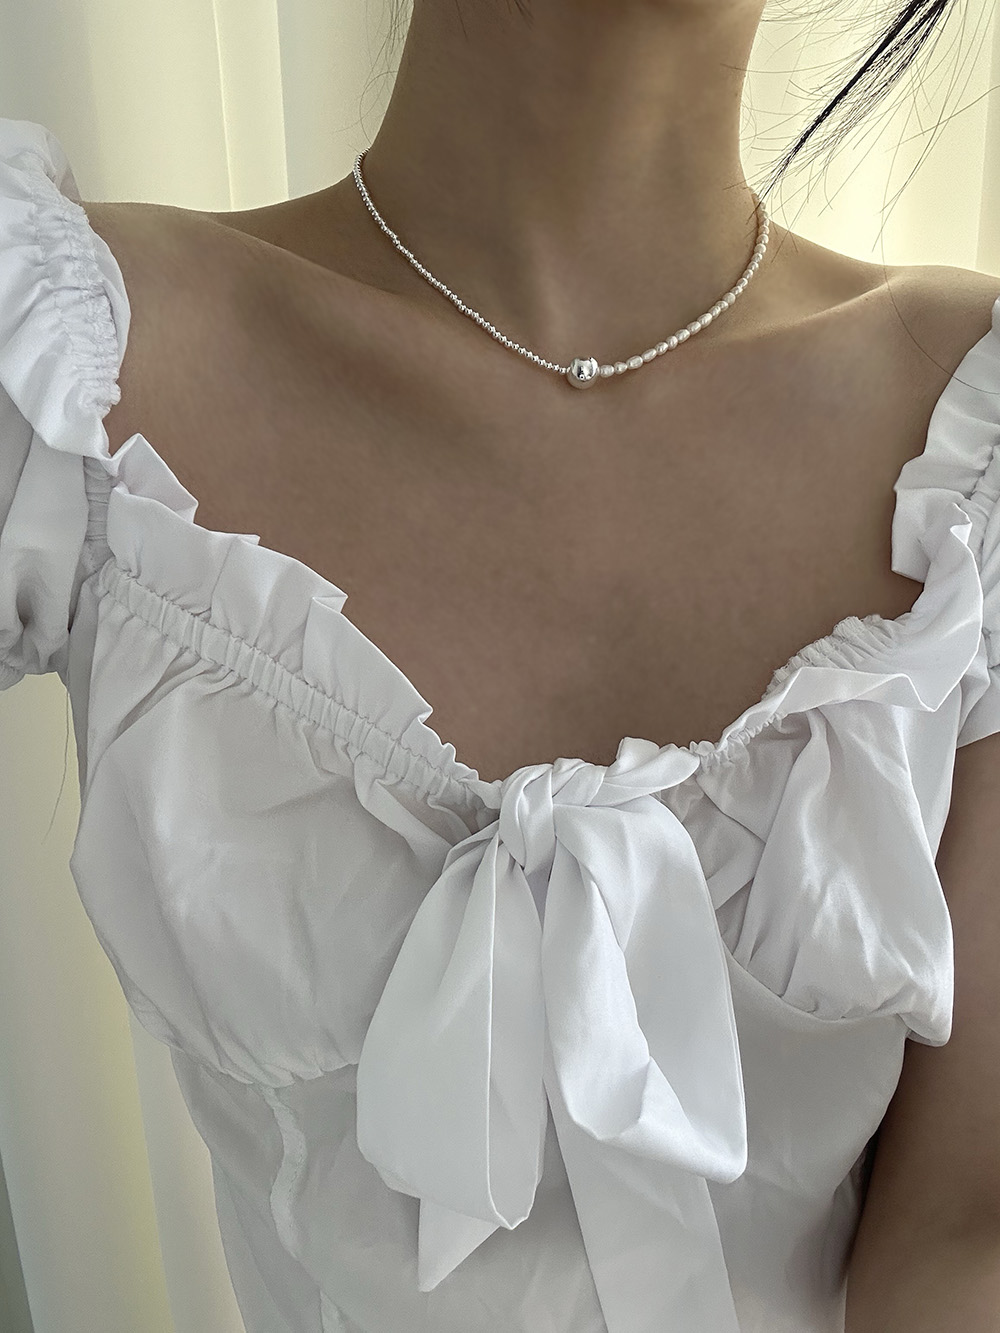 [92.5 silver] Center ball necklace